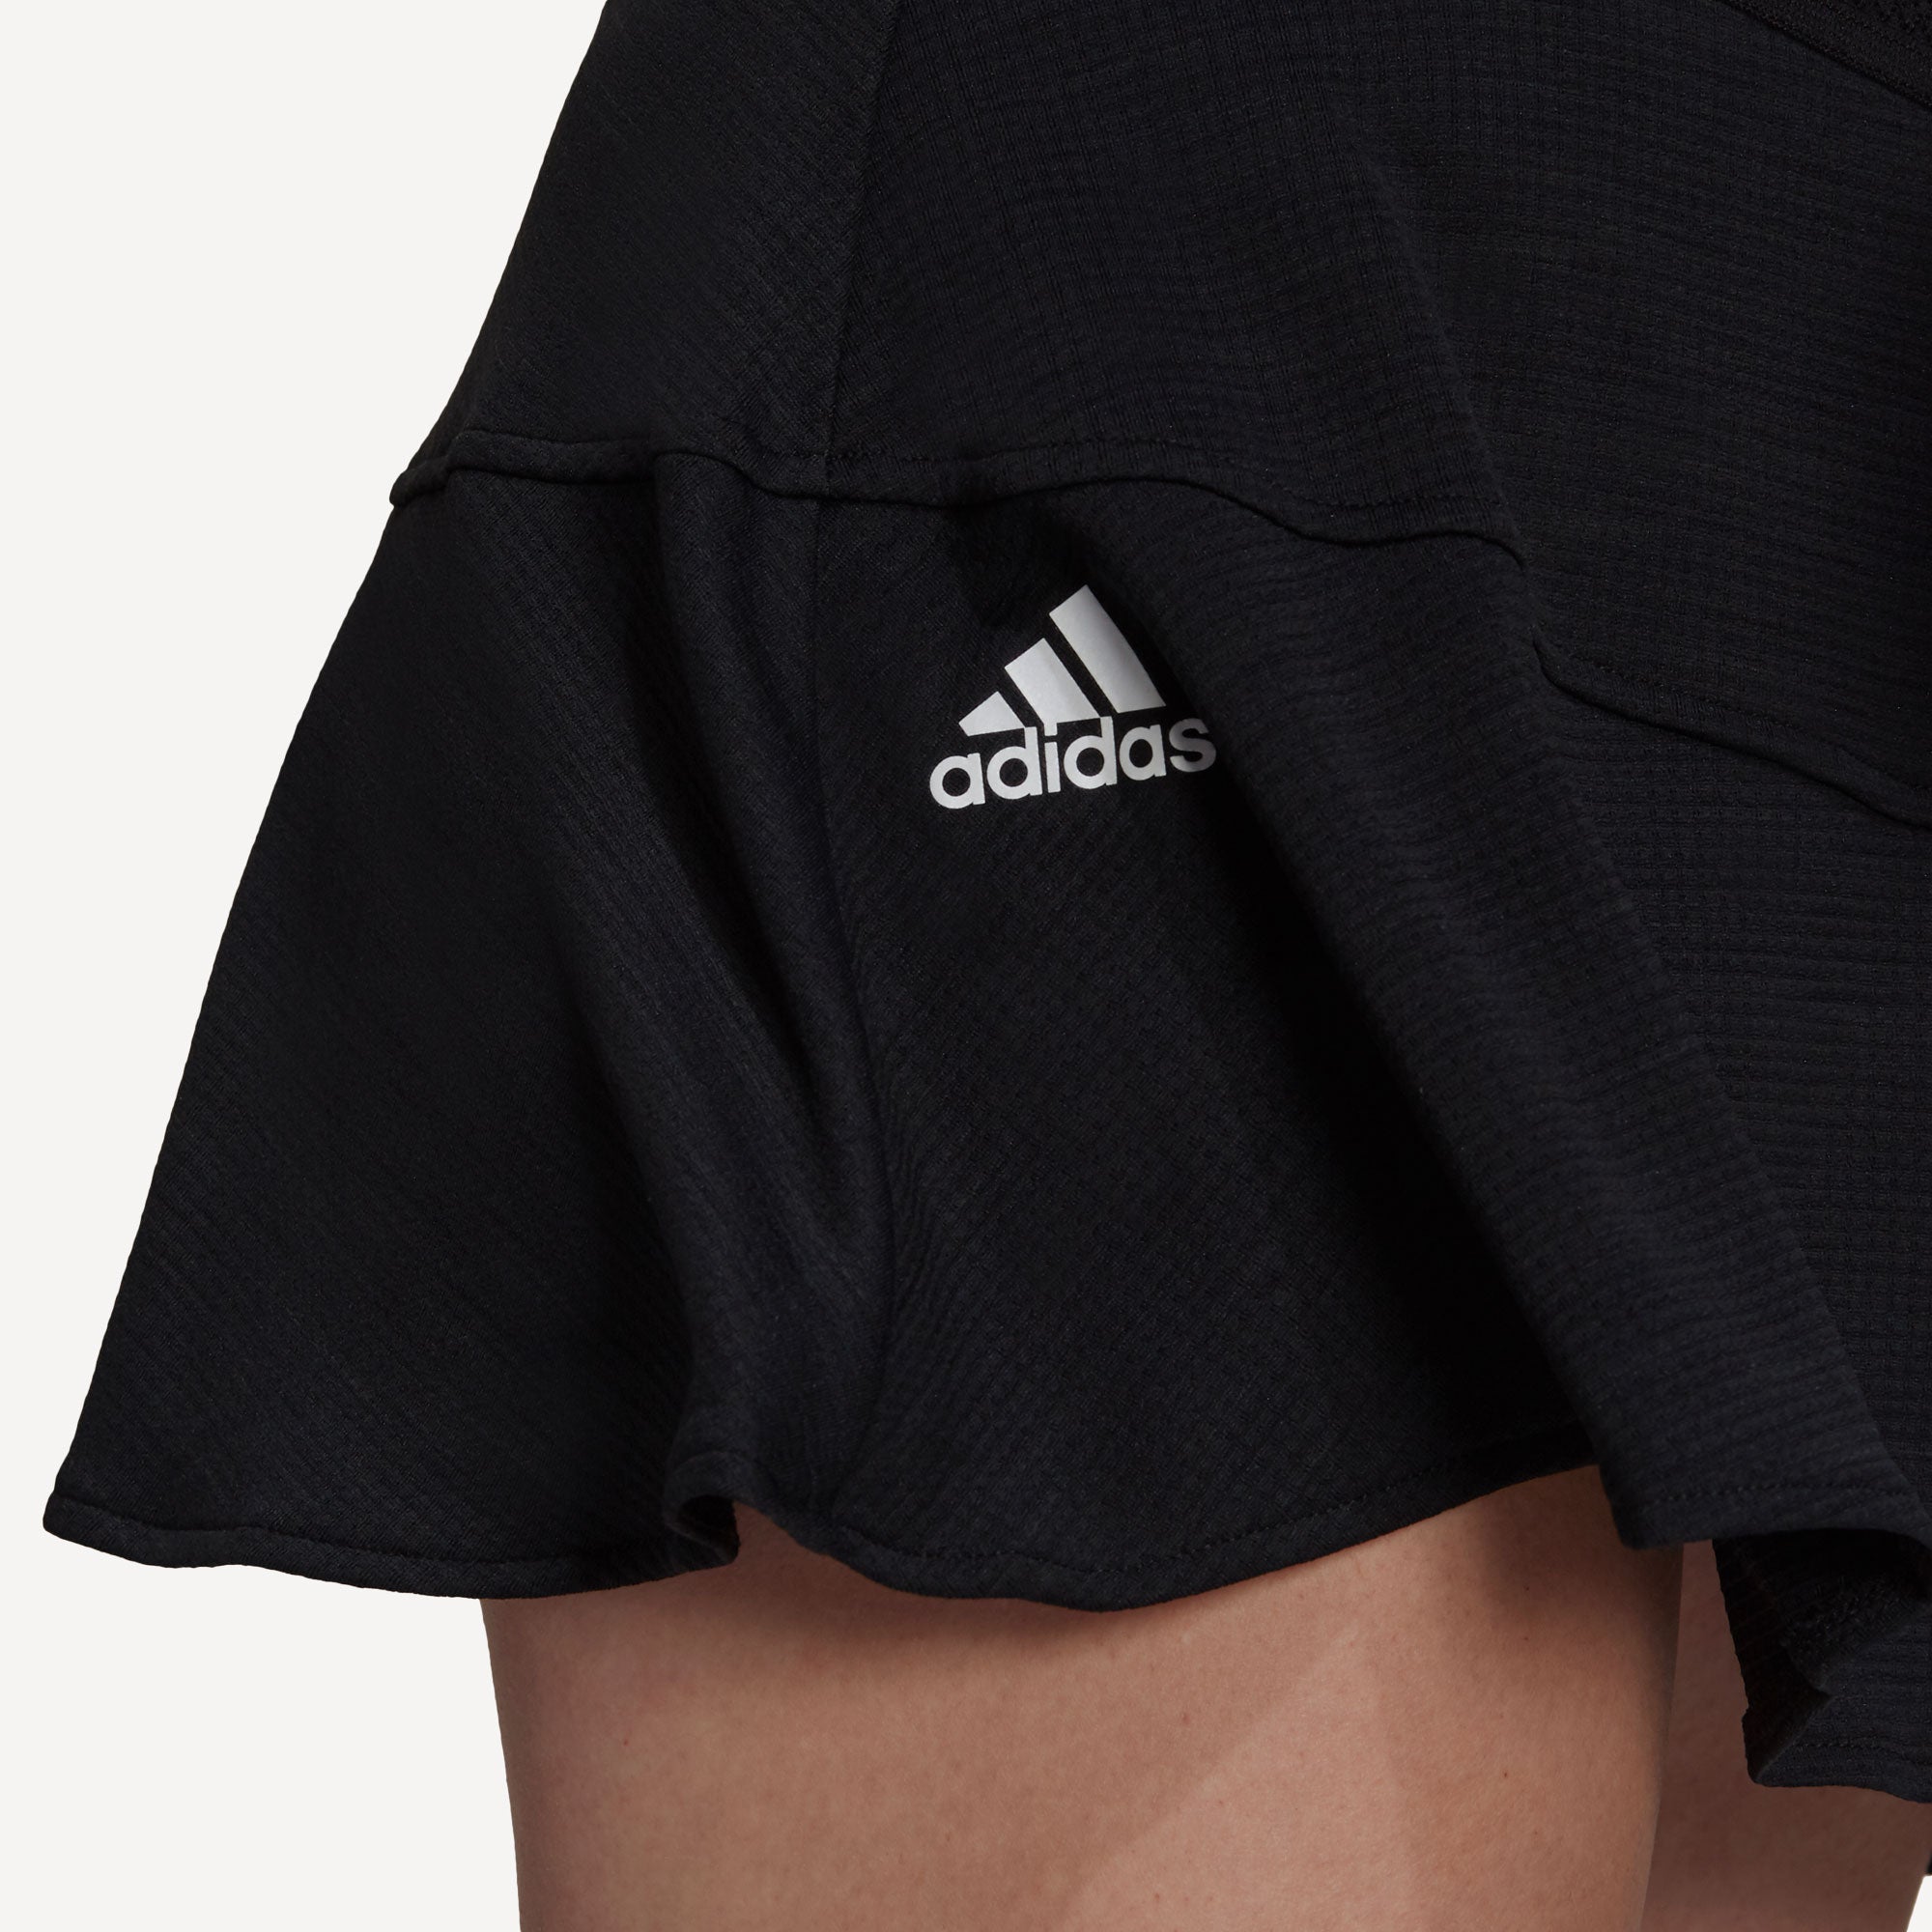 adidas Match Women's Tennis Skirt Black (4)